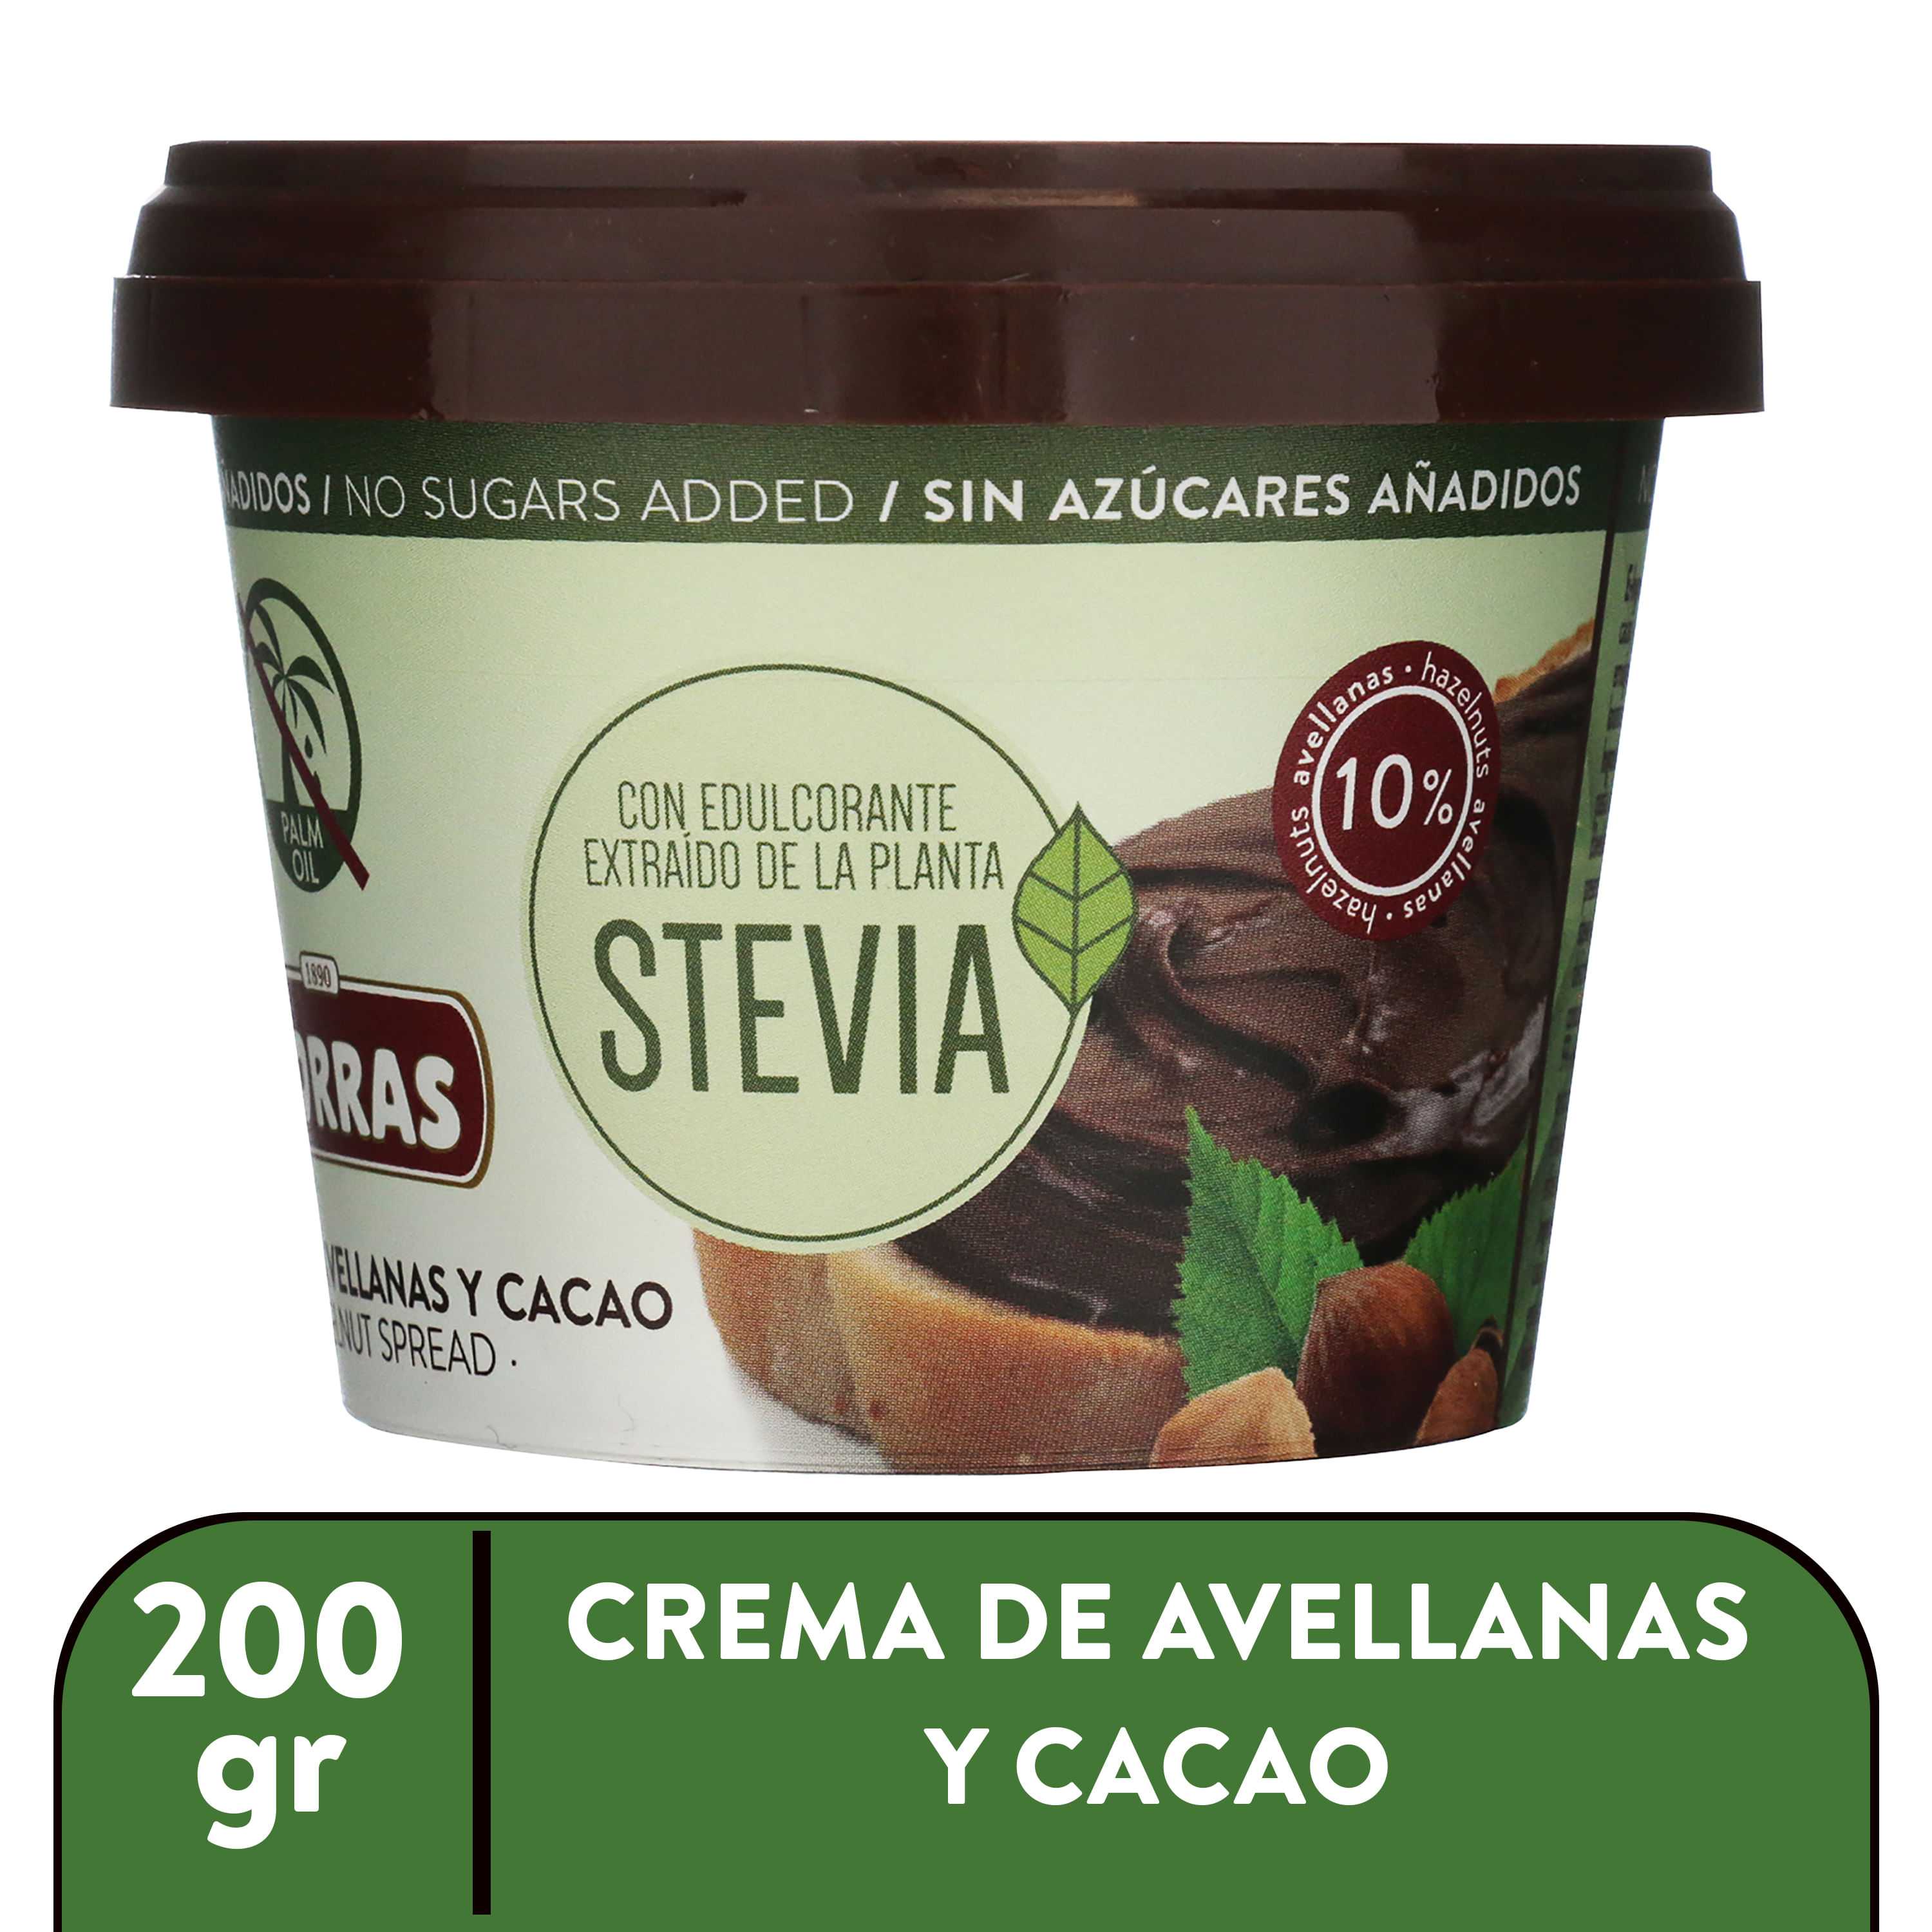 Comprar Crema de Cacao y Avellanas en Canarias, Los mejores precios